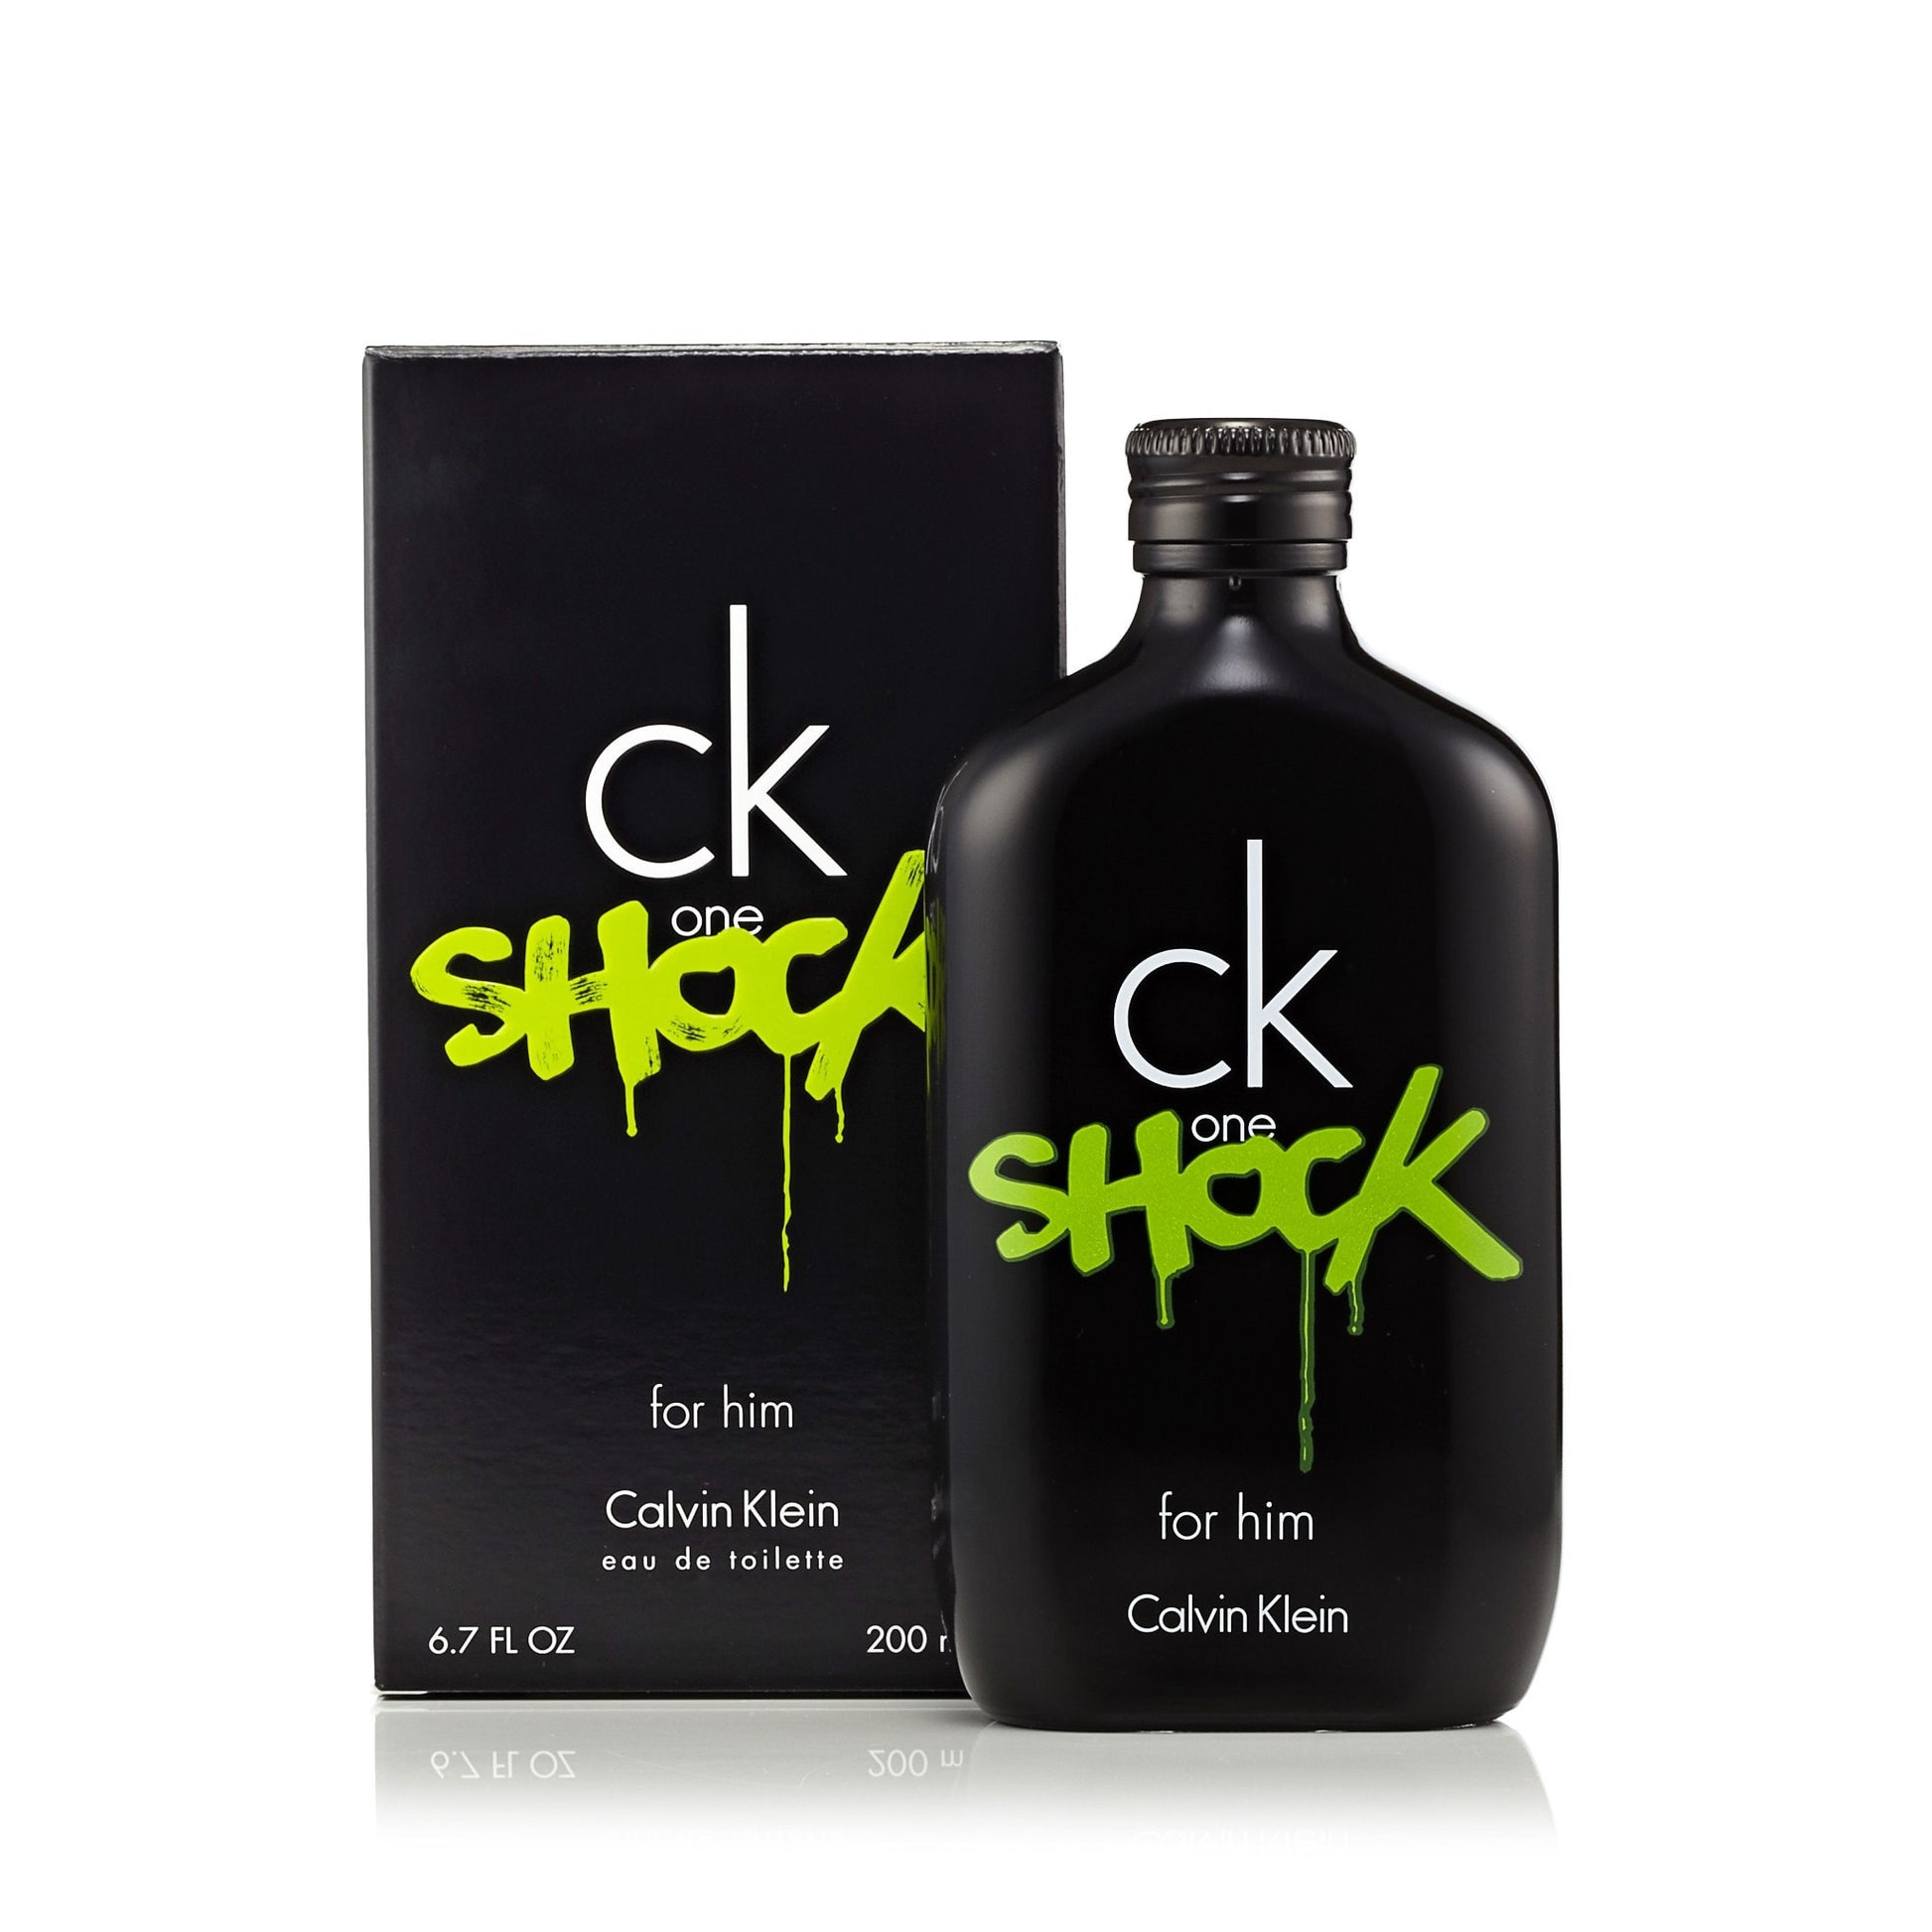 CK One Shock Eau de Toilette Spray for Men by Calvin Klein 6.7 oz. Click to open in modal